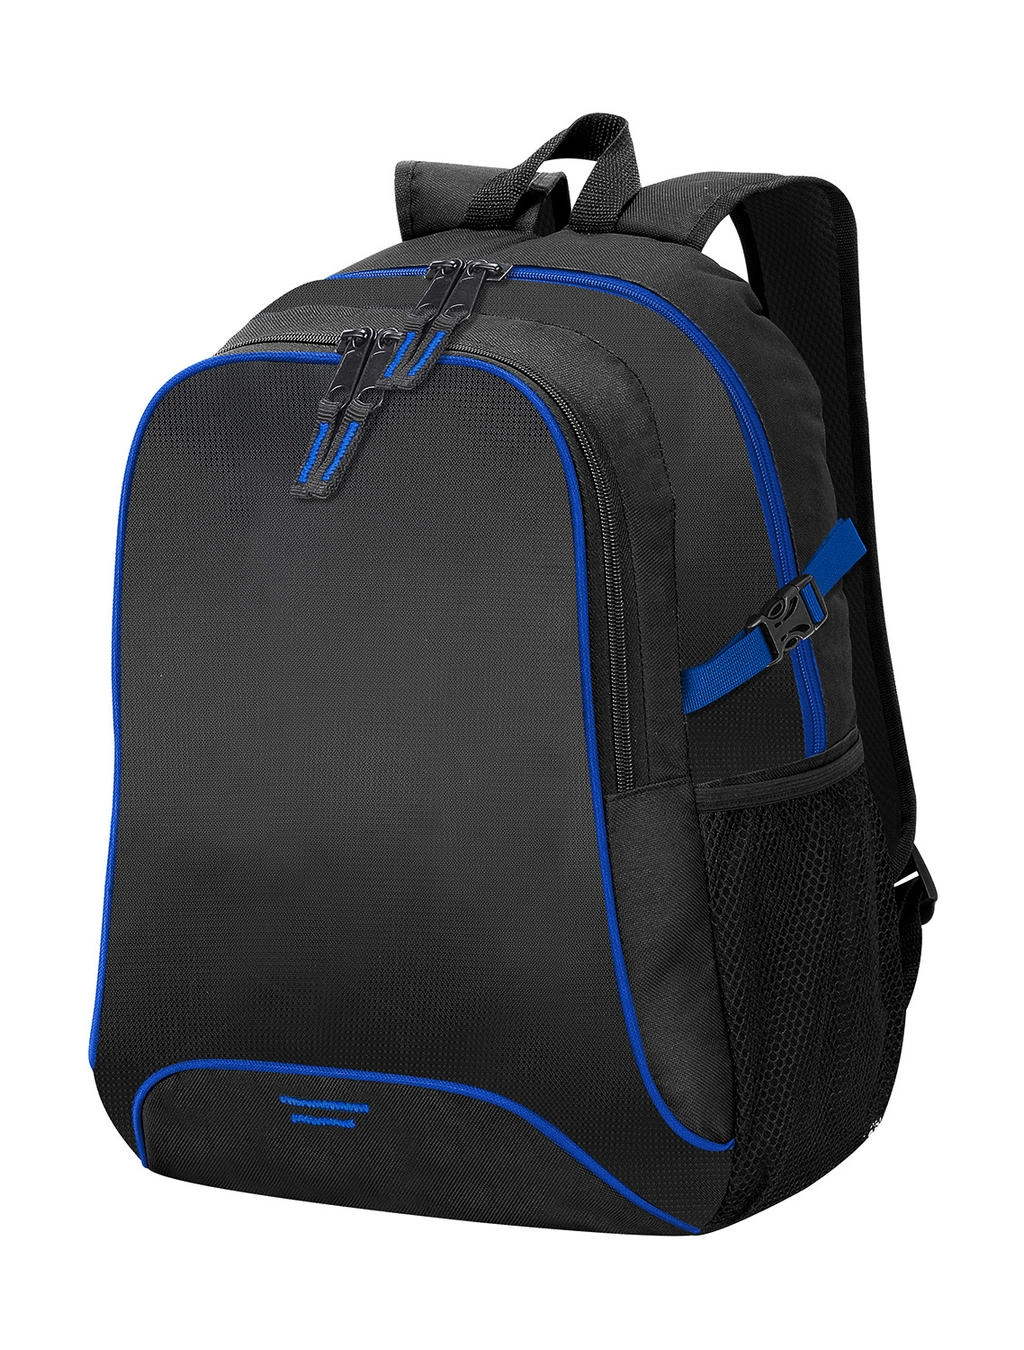 Osaka Basic Backpack zum Besticken und Bedrucken in der Farbe Black/Royal mit Ihren Logo, Schriftzug oder Motiv.